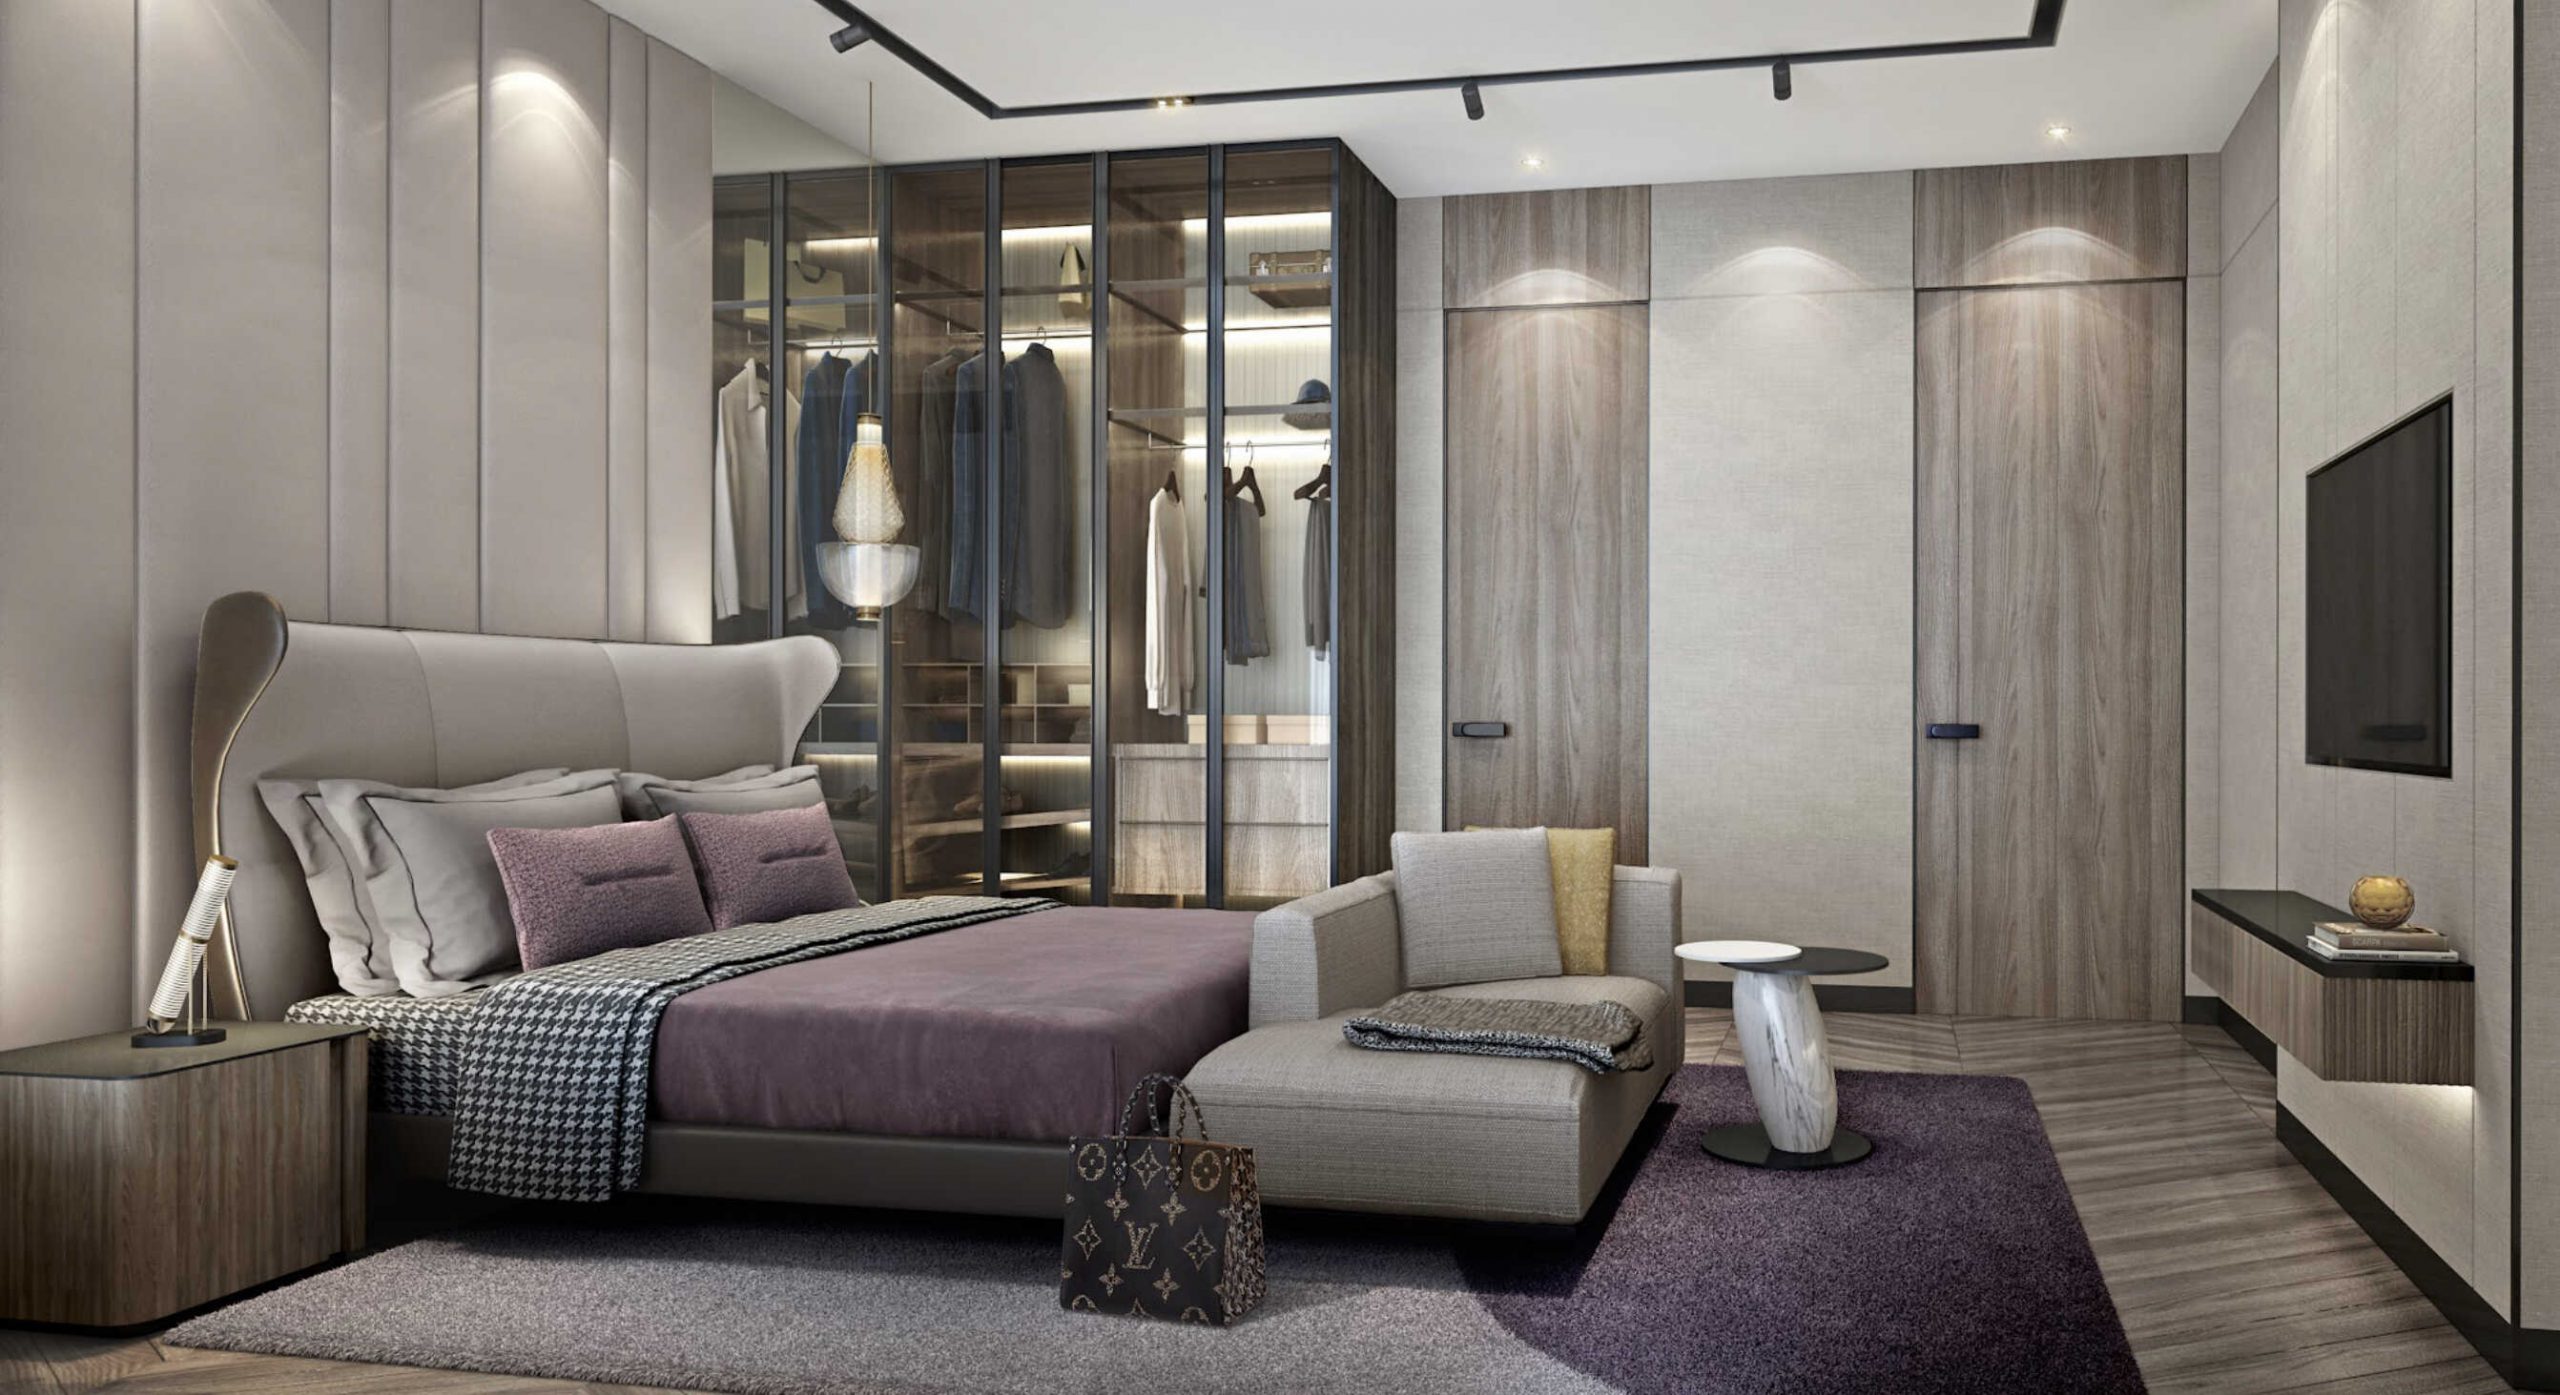 Phòng ngủ Mẫu B - Modern Luxury